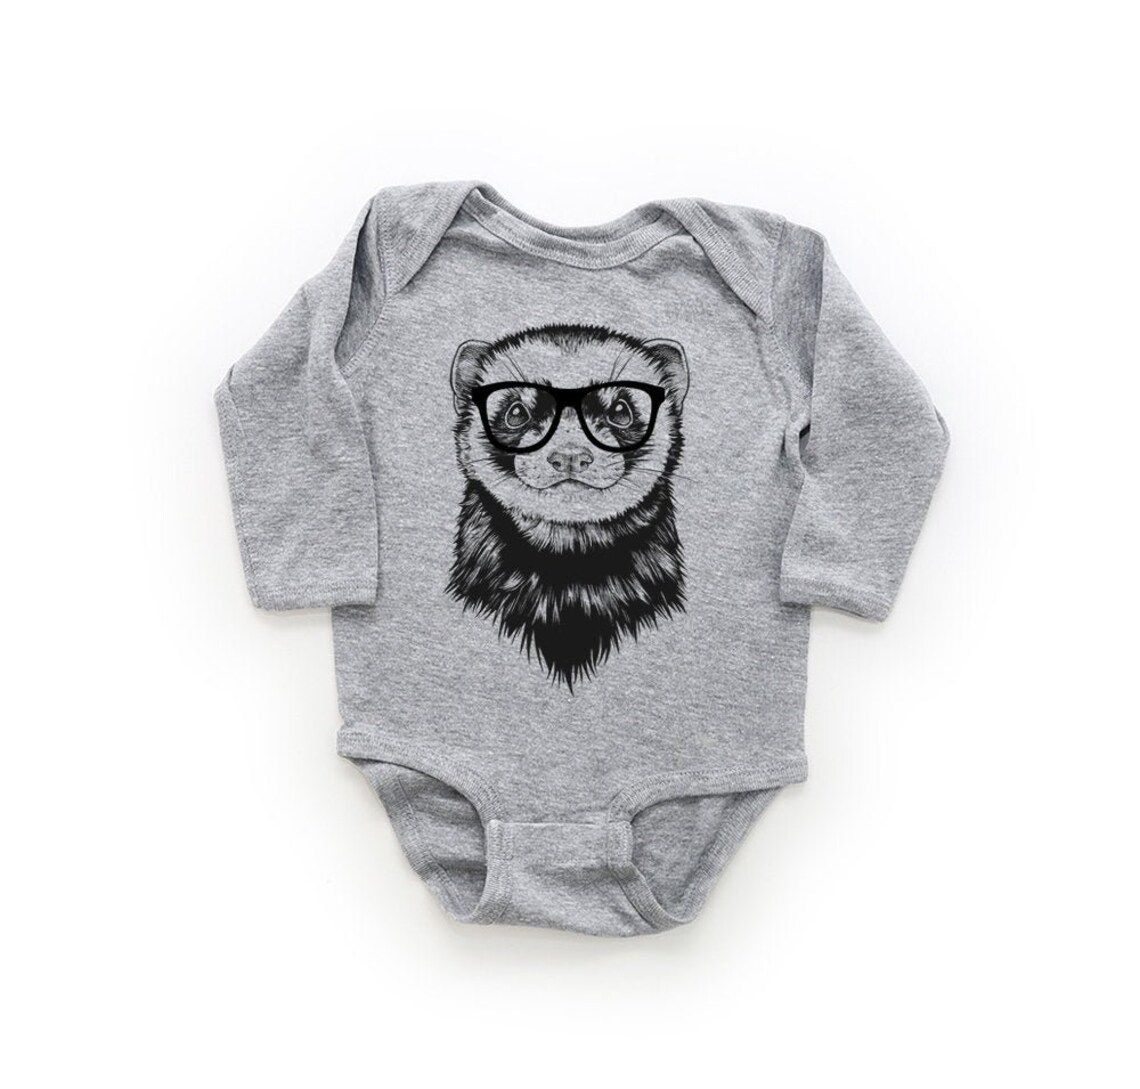 Ferret Baby Bodysuit Animal Baby Clothes Pet Baby Boy - Etsy